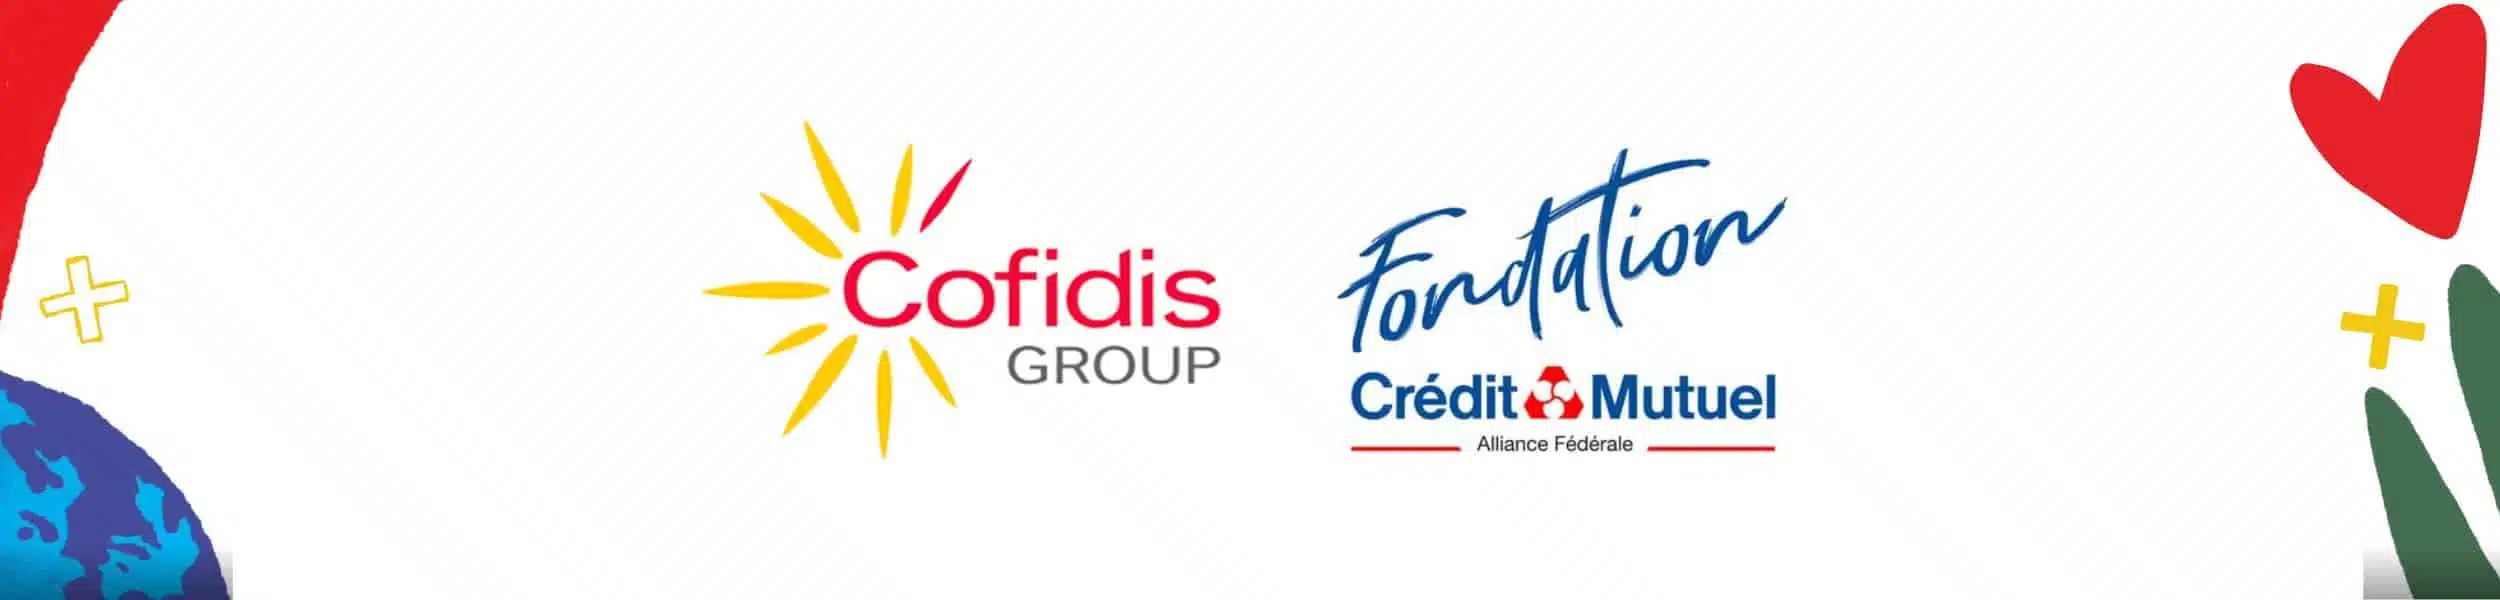 : Cofidis Group s’engage à la Fondation Crédit Mutuel Alliance Fédérale